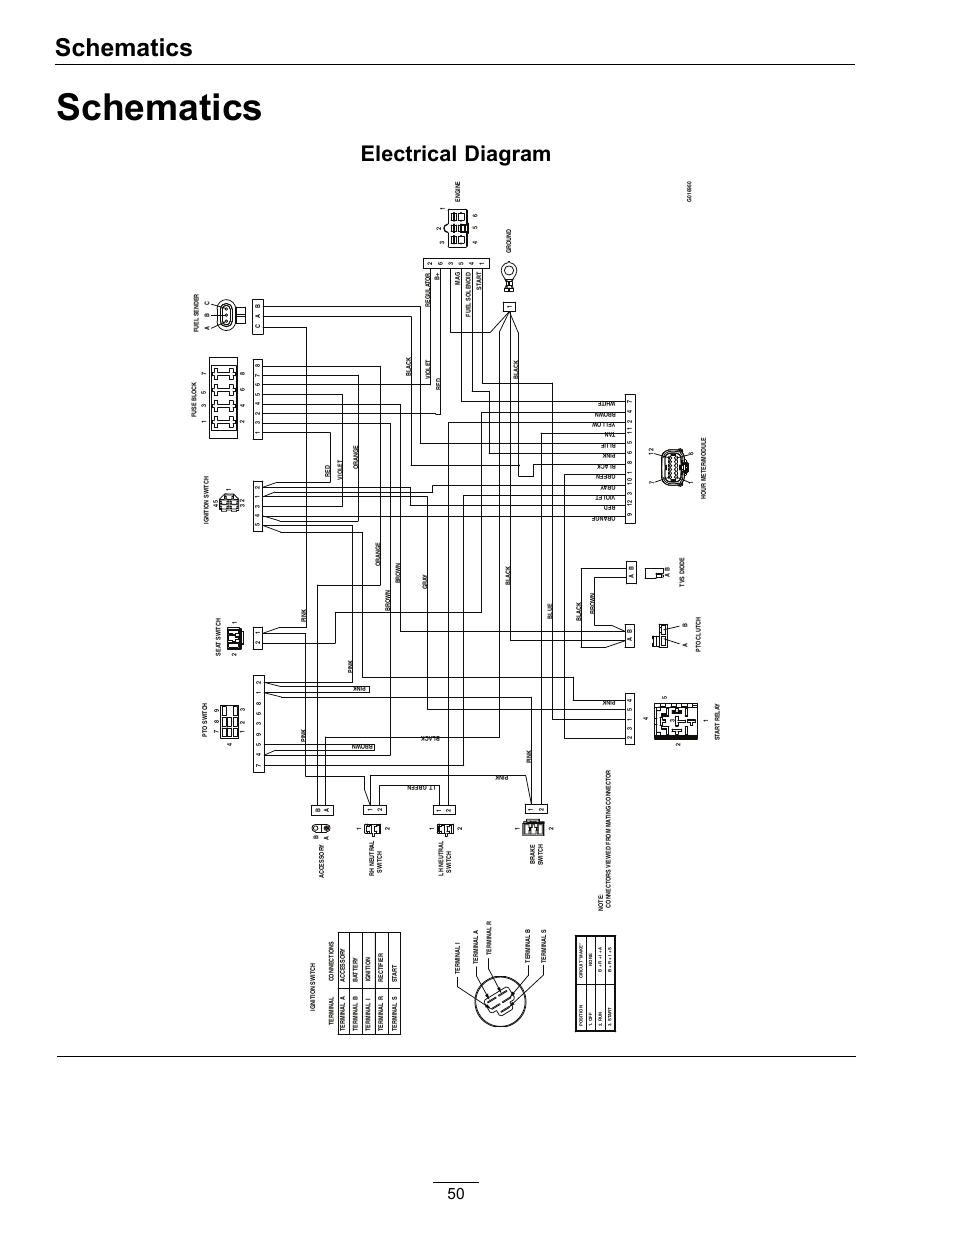 davis anemometer wiring diagram